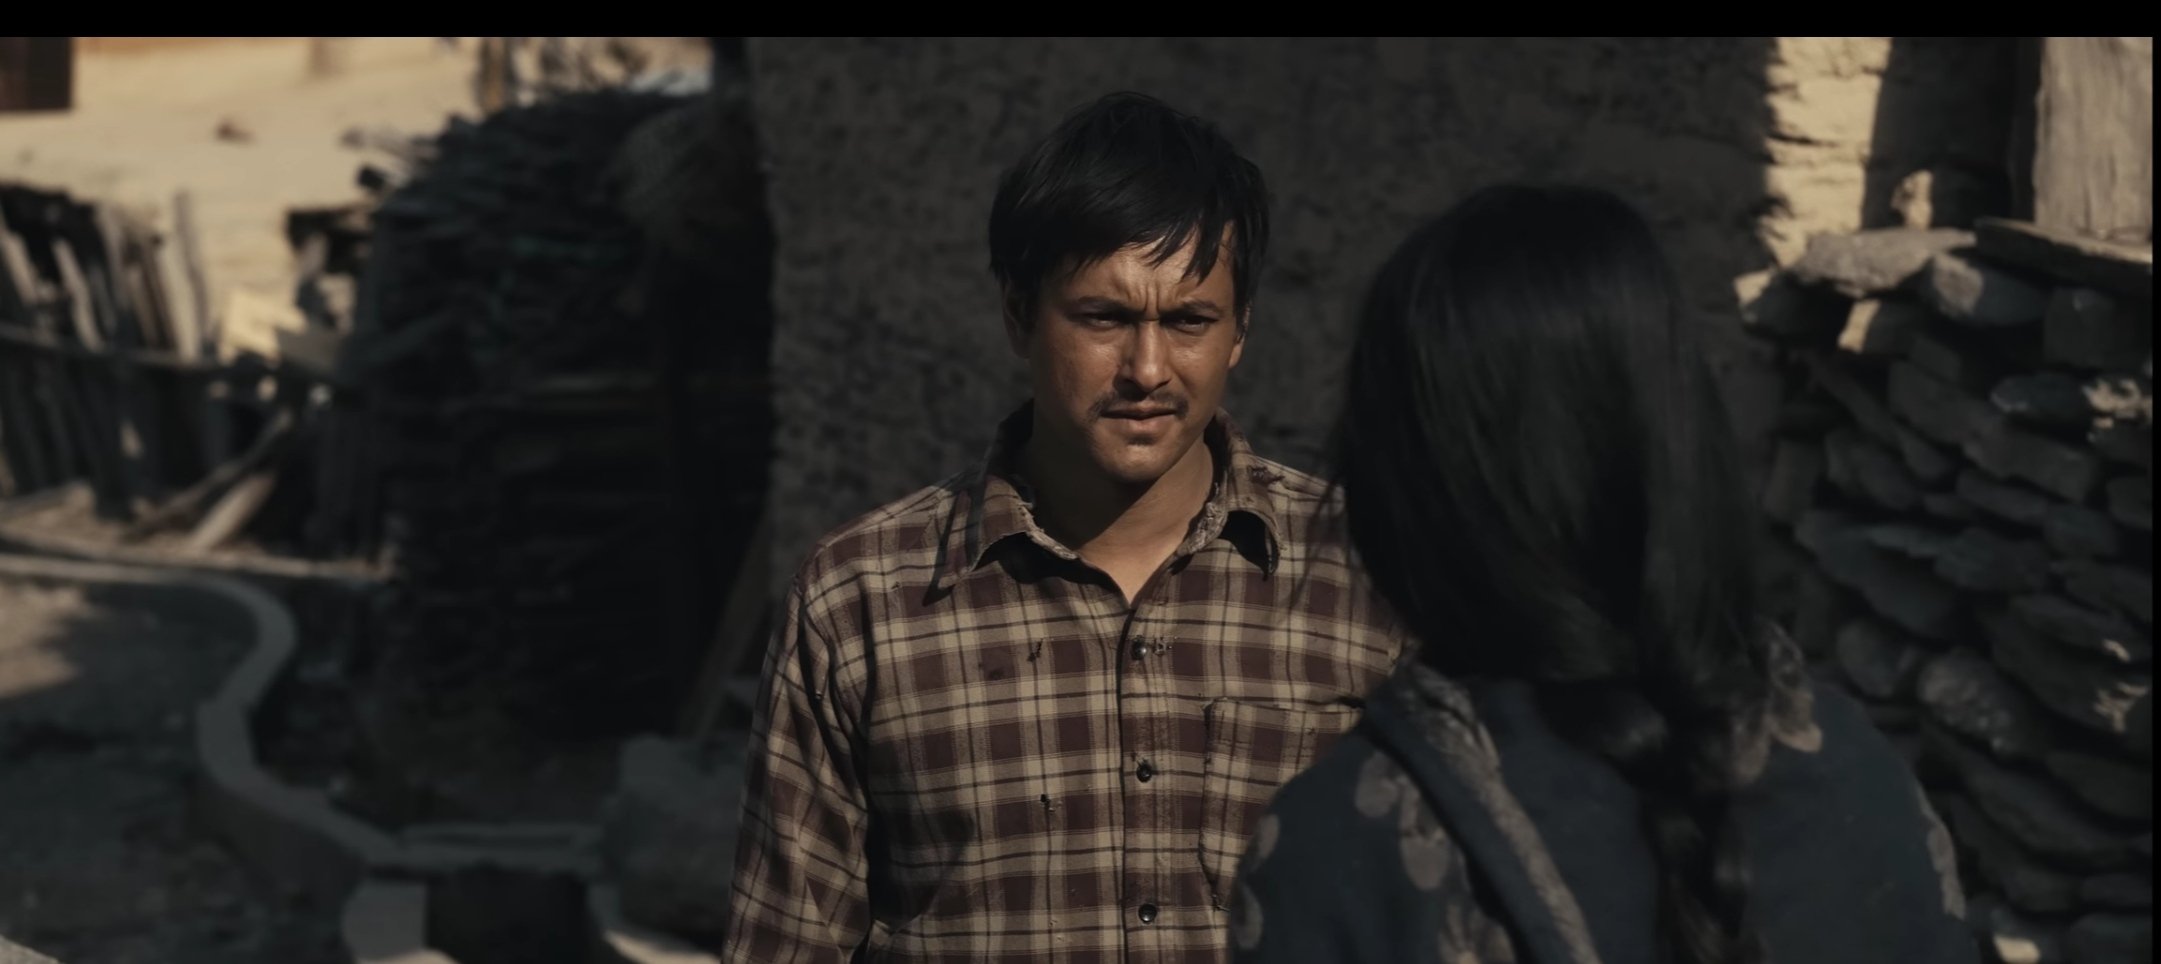 चलचित्र प्रकाश : जुम्लाको कथा, नेपाली समाजको यथार्थता